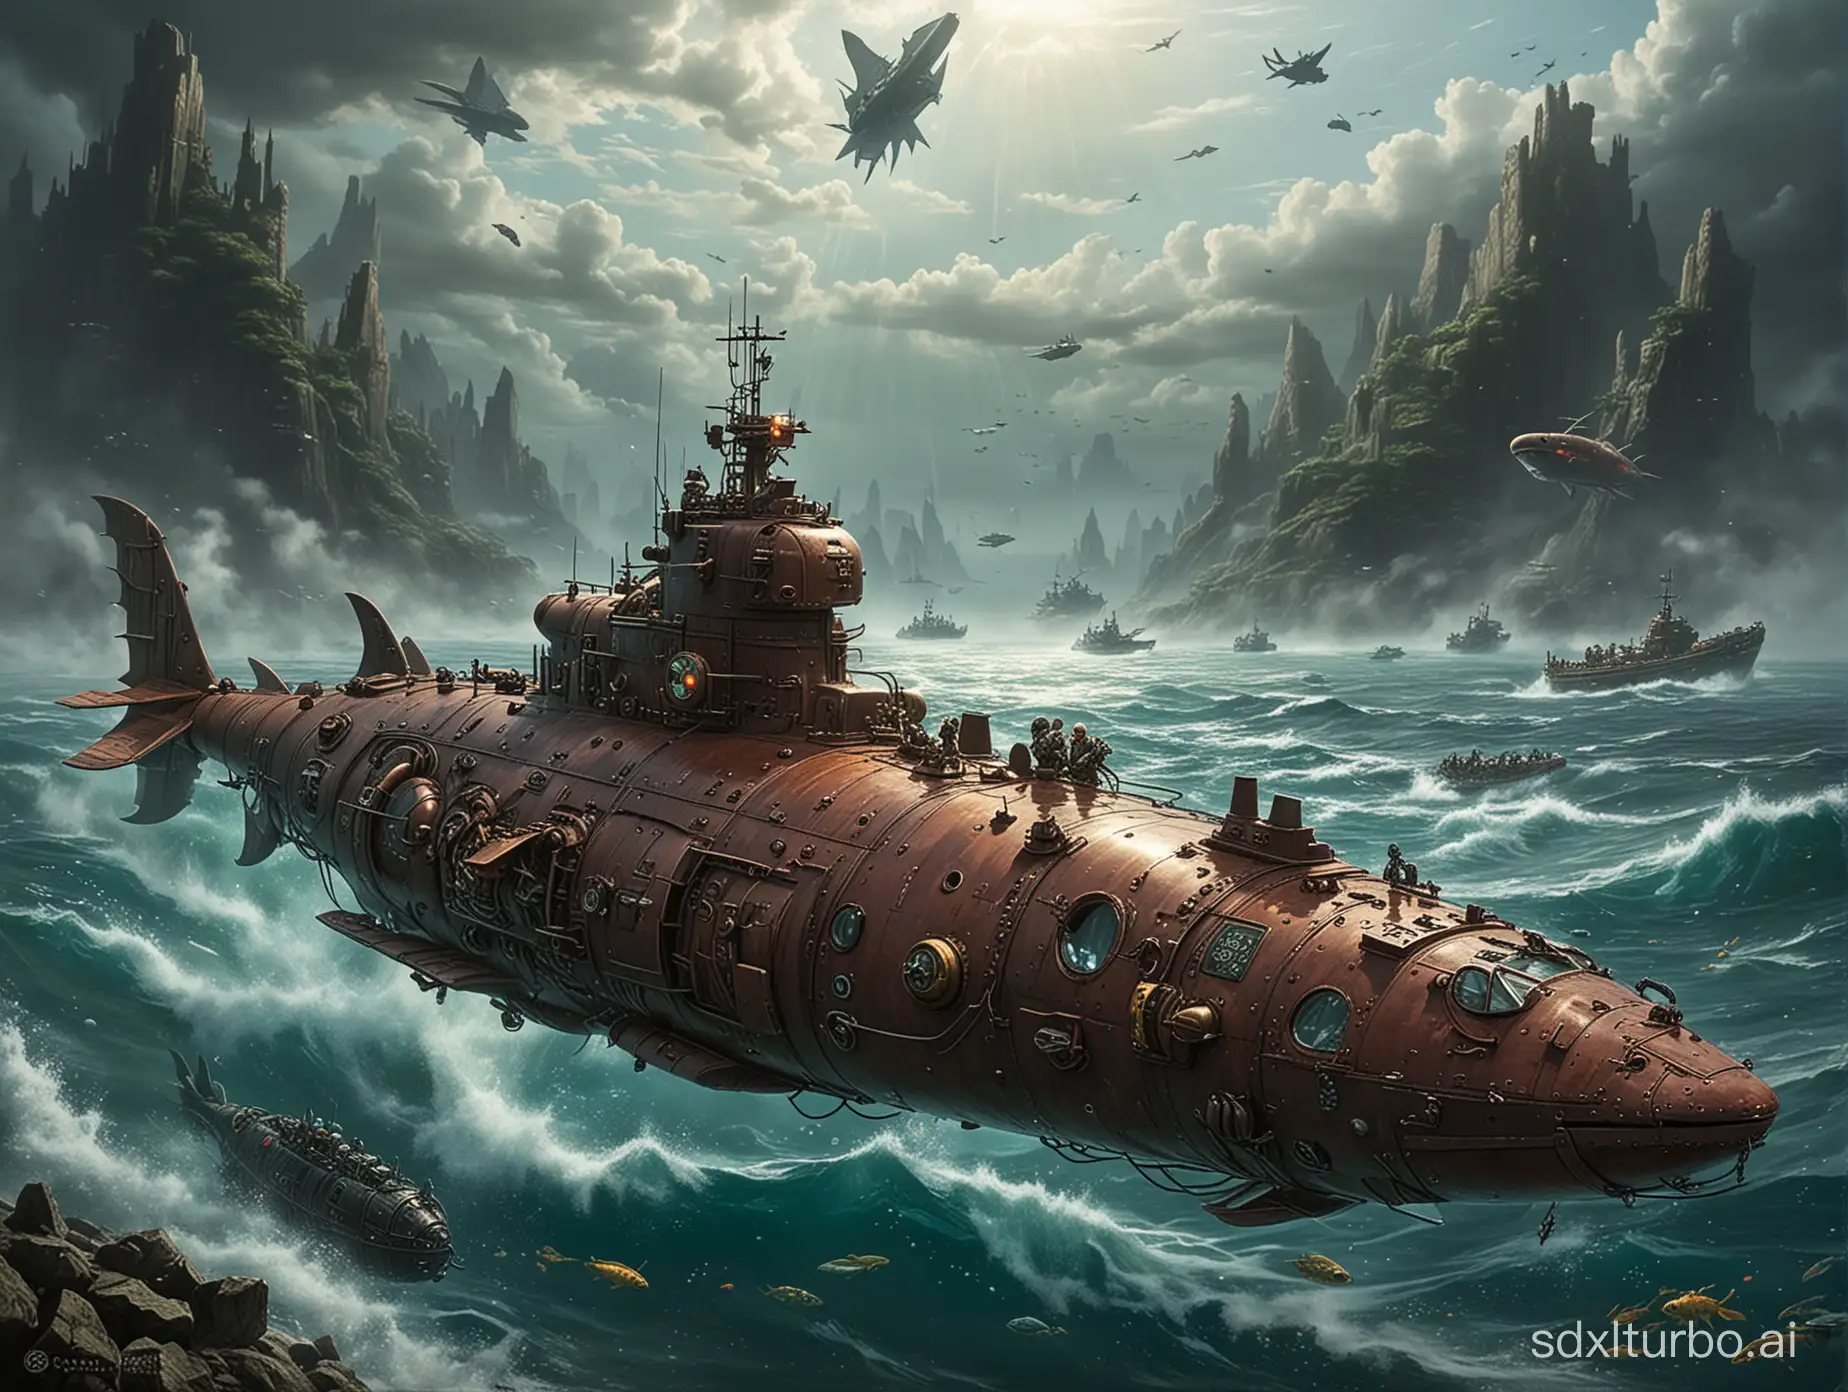 Futuristic-Dragon-Submarine-Exploring-Depths-in-a-SciFi-Universe